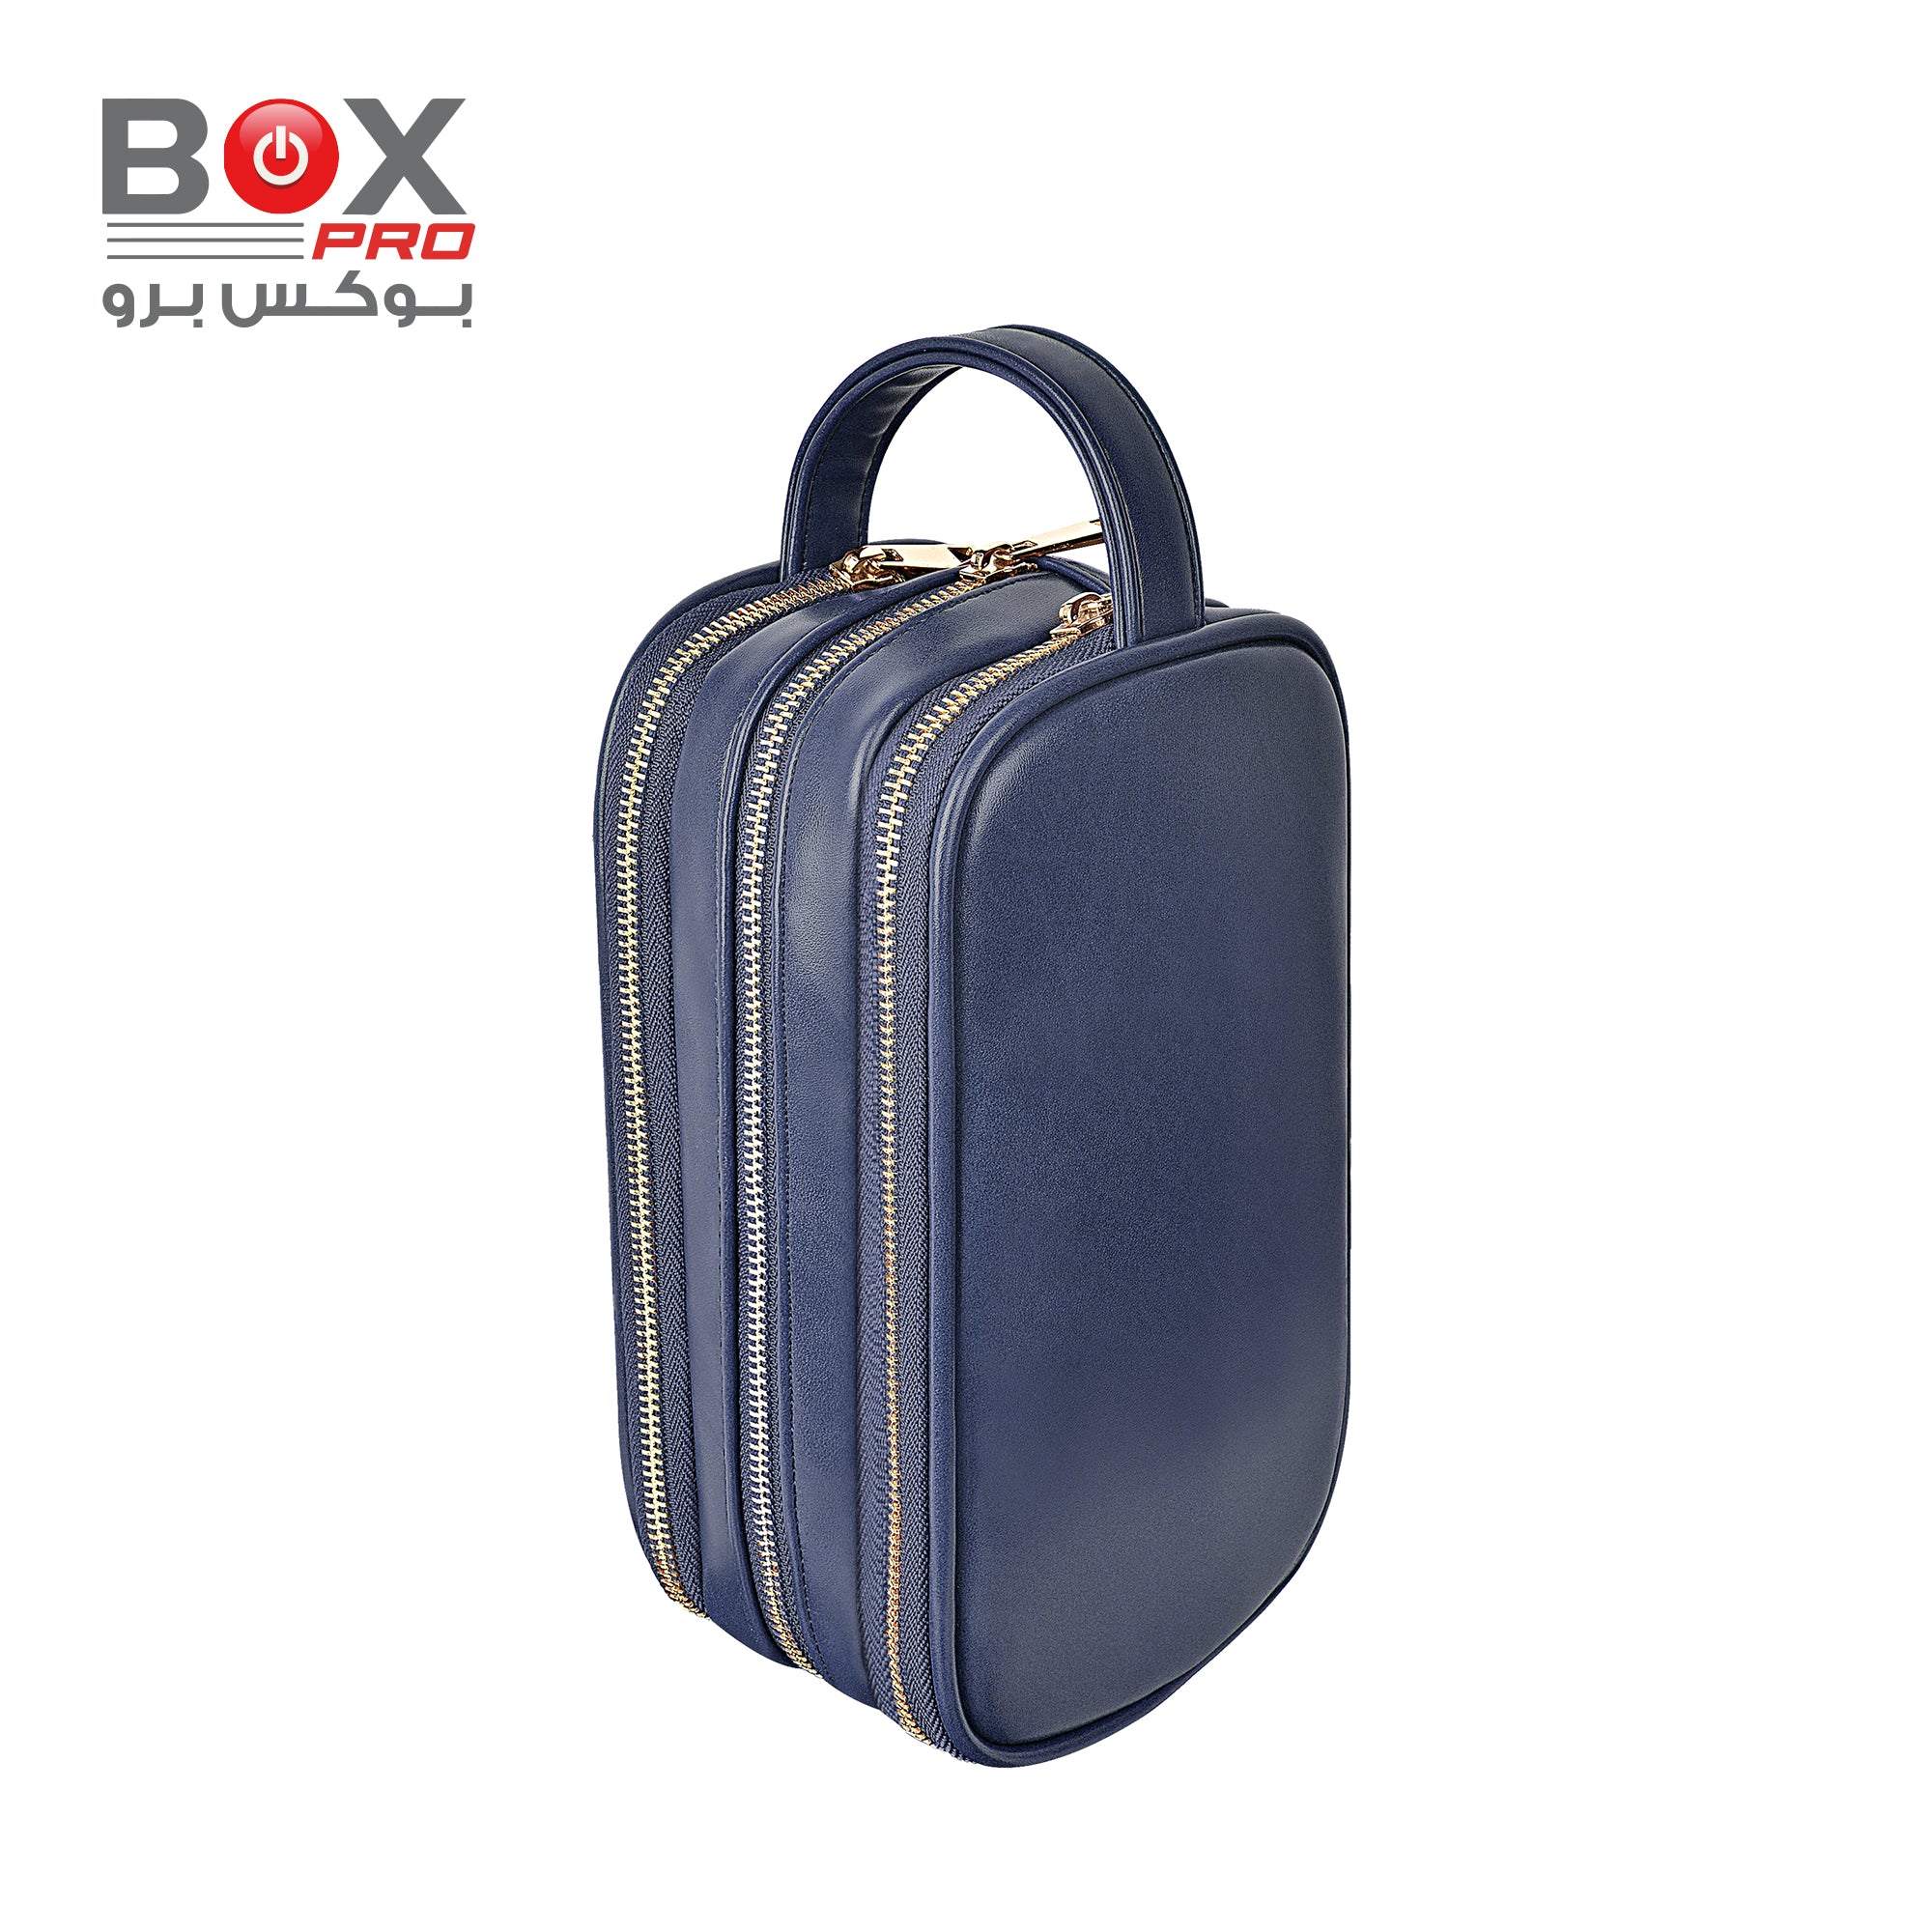 BoxPro Salem Lux Tri Compartment Organize Case - Blue